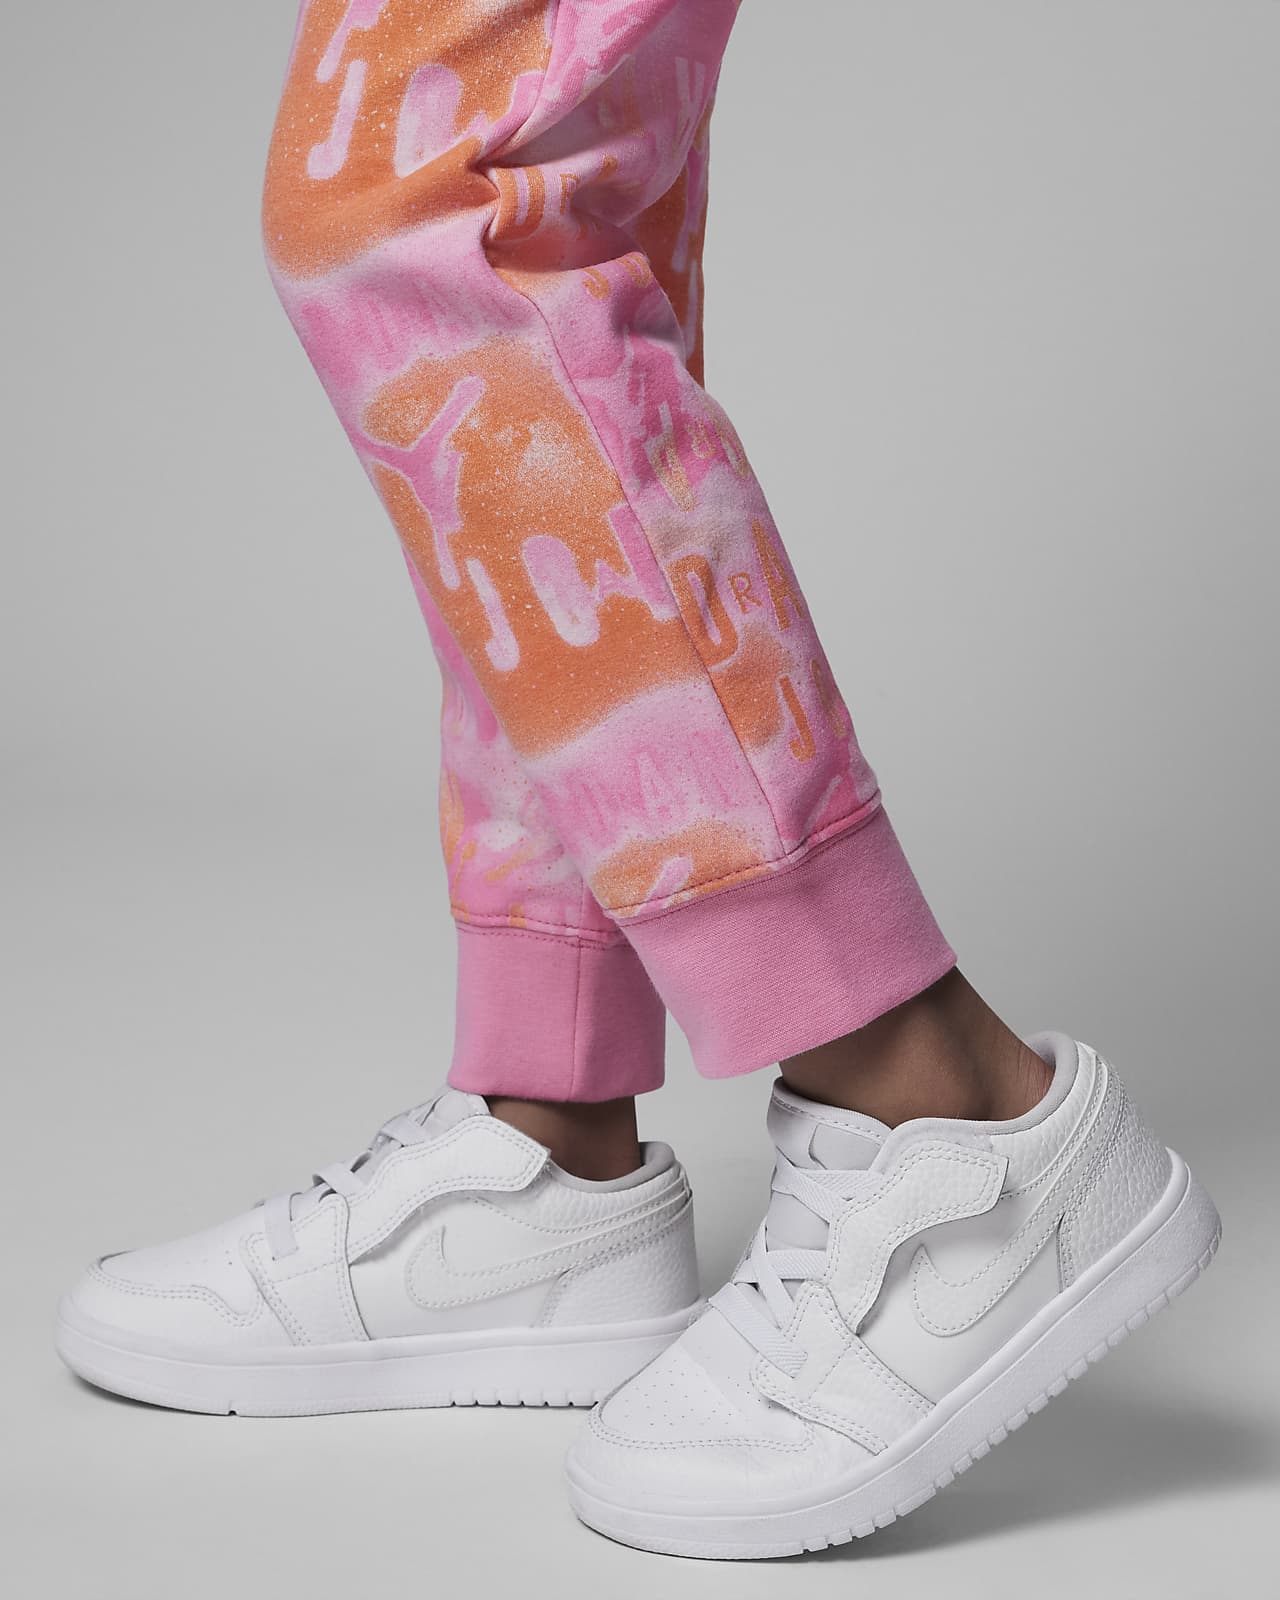 Pantalon pour l'hiver en tissu Fleece Jordan Essentials pour homme. Nike LU